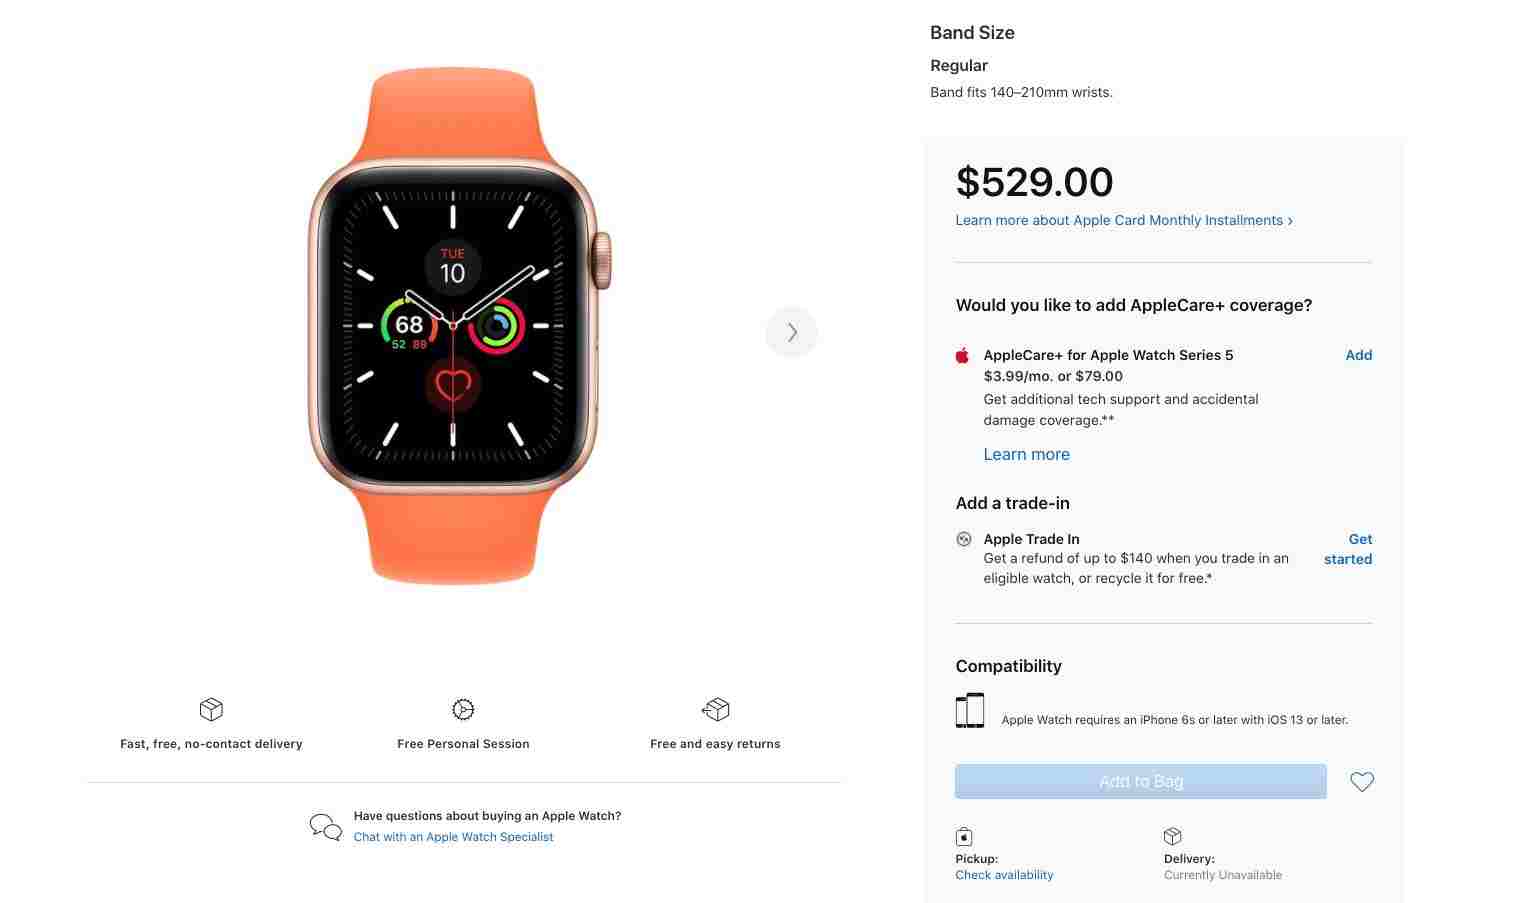 Apple Watch 5 tükendi: Apple, Watch 6 için eylülde tanıtım etkinliği düzenleyebilir